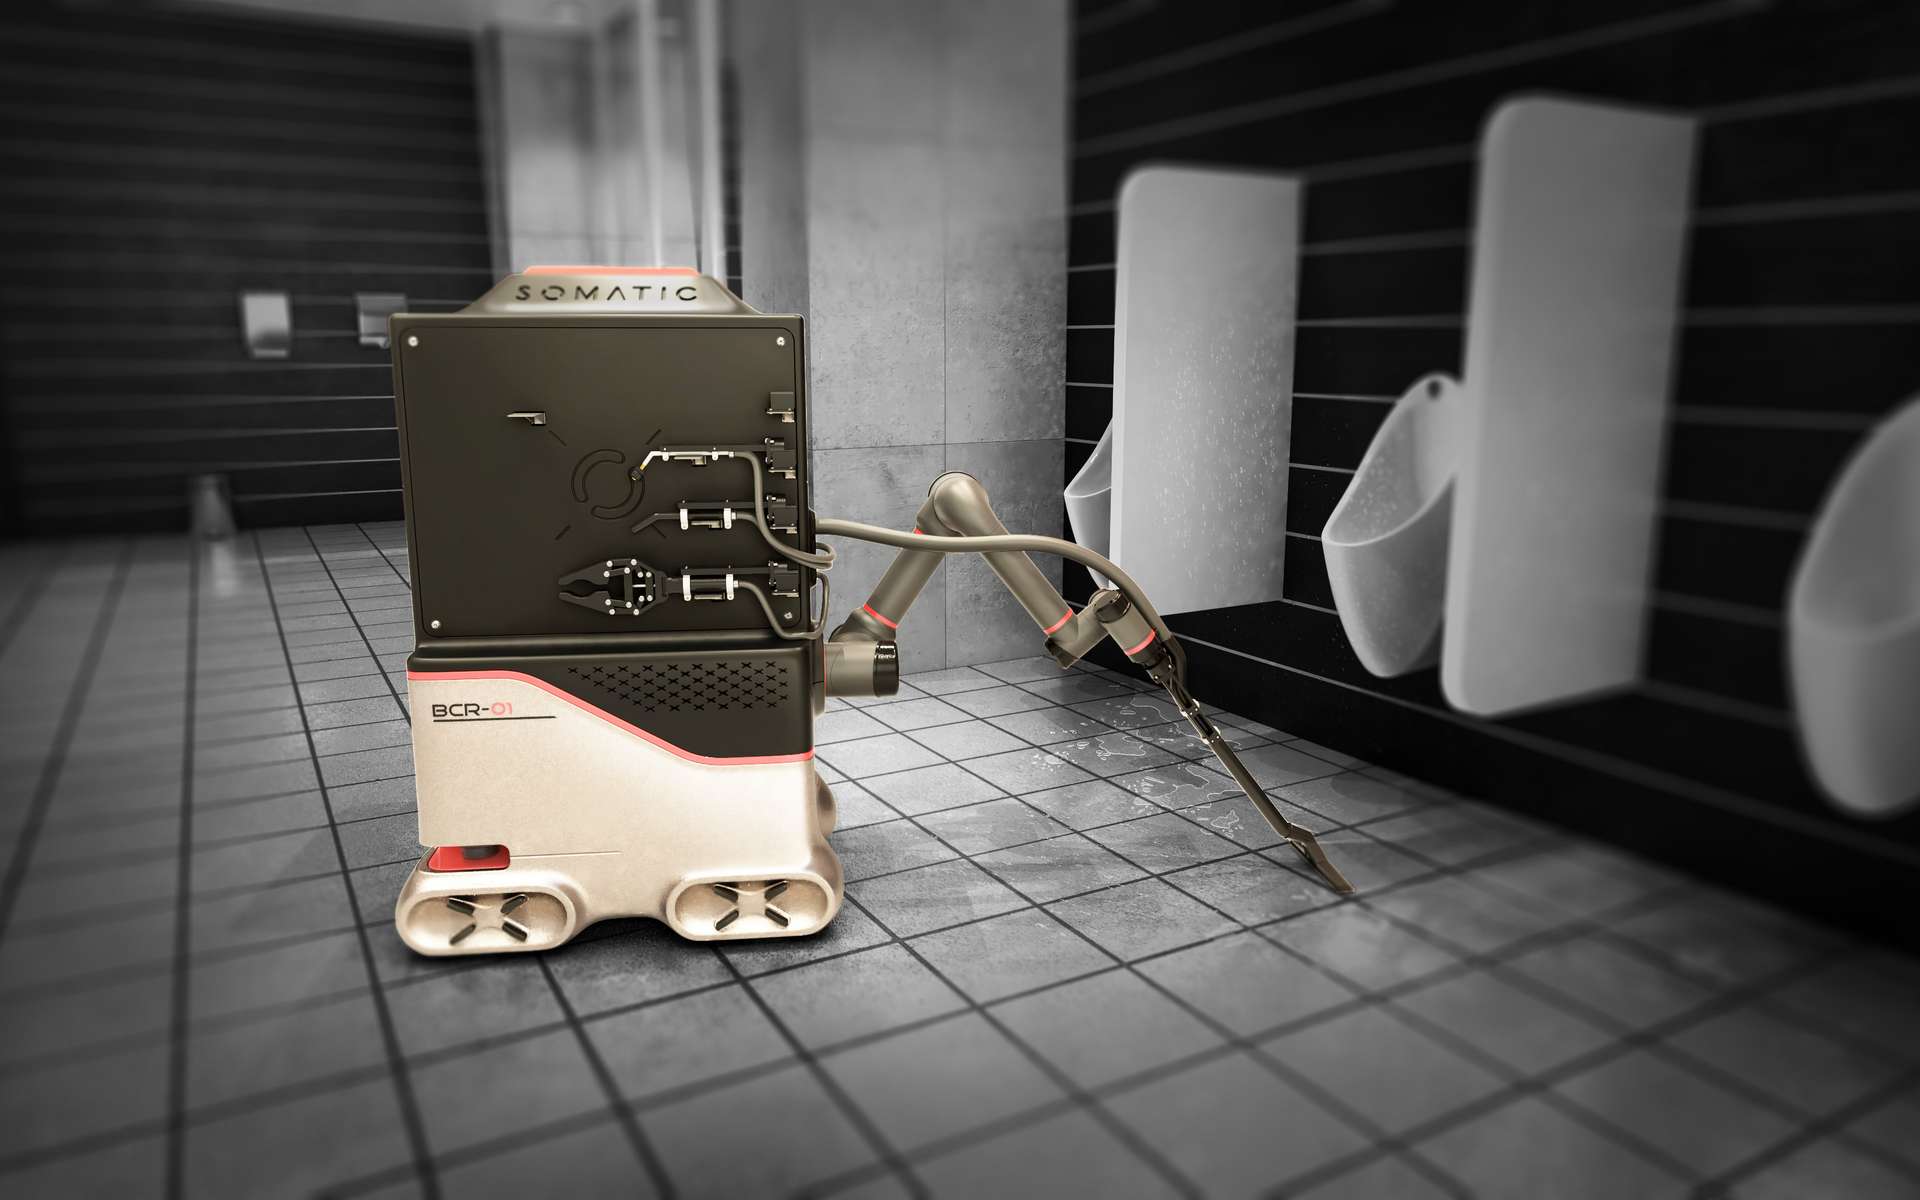 Ce robot autonome veut remplacer les équipes de nettoyage dans les bureaux